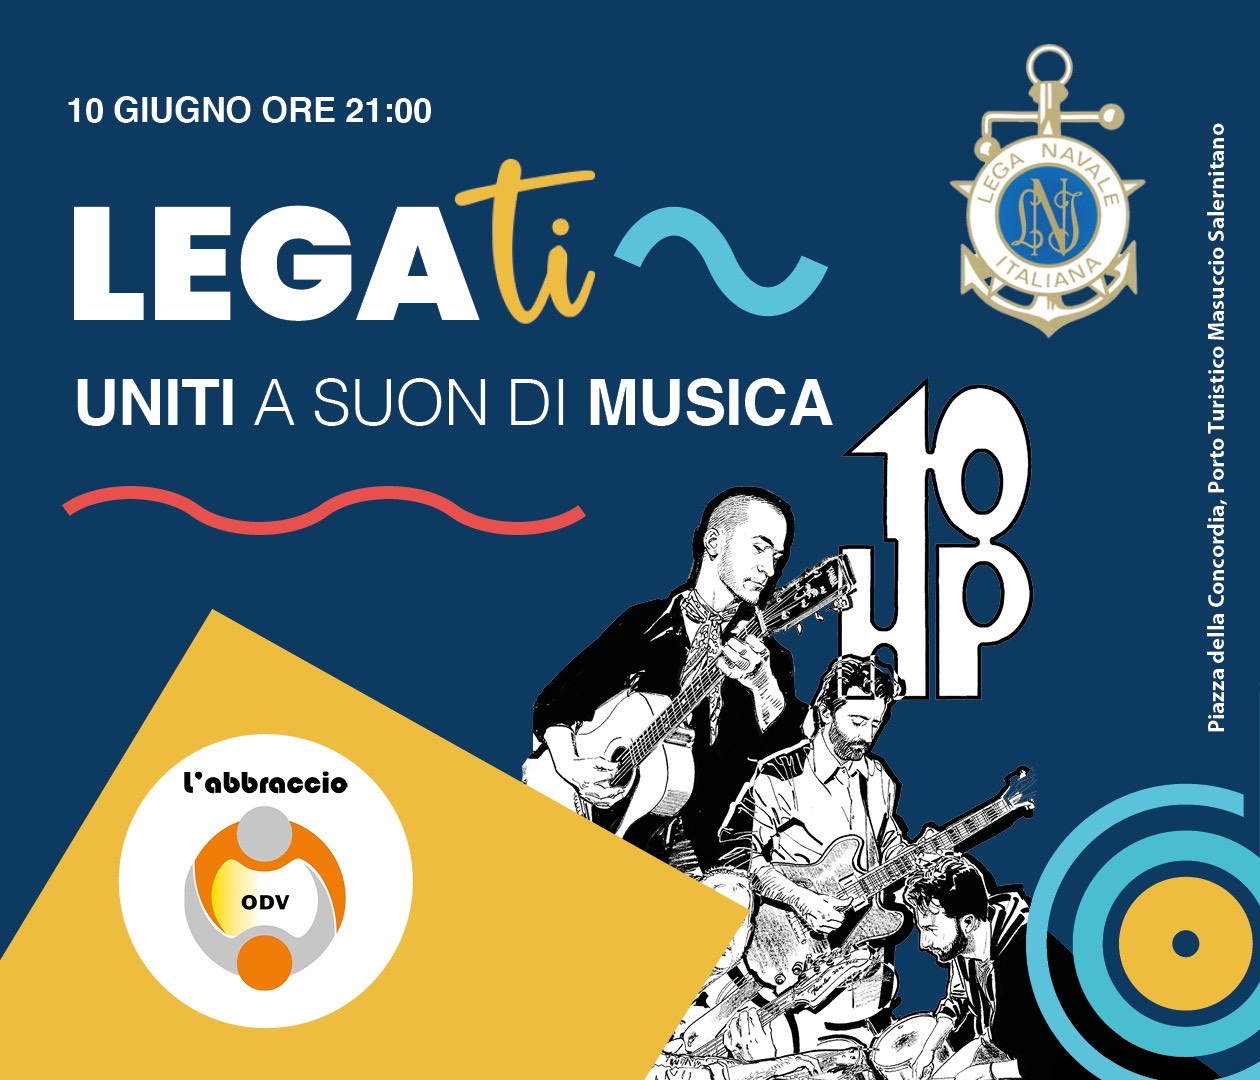 Salerno: Lega Navale, eventi culturali all’insegna della solidarietà